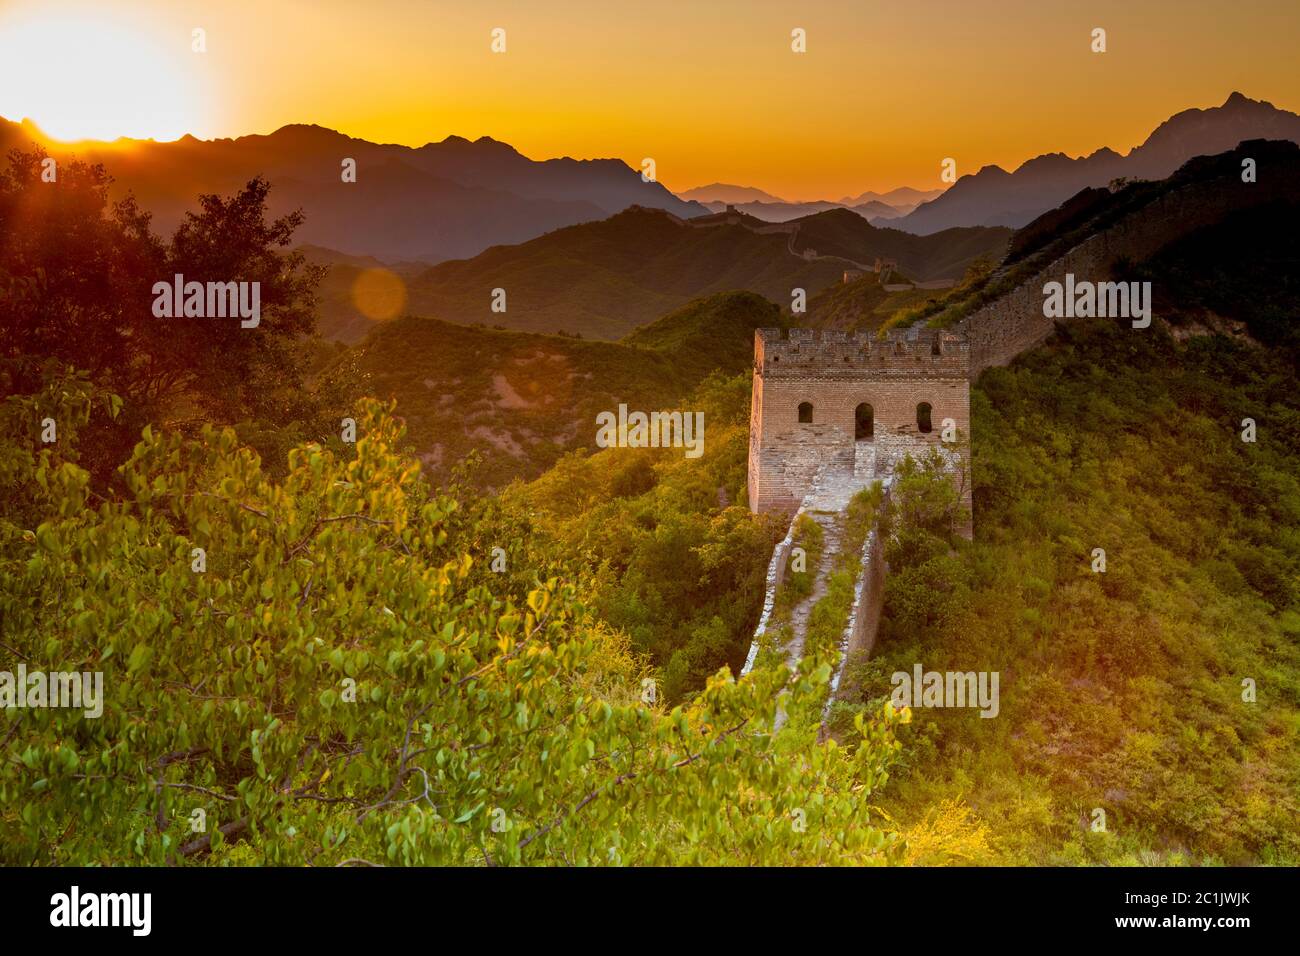 Beijing, China - AUG 11, 2014: Sunset at Jinshanling Great Wall of China Stock Photo